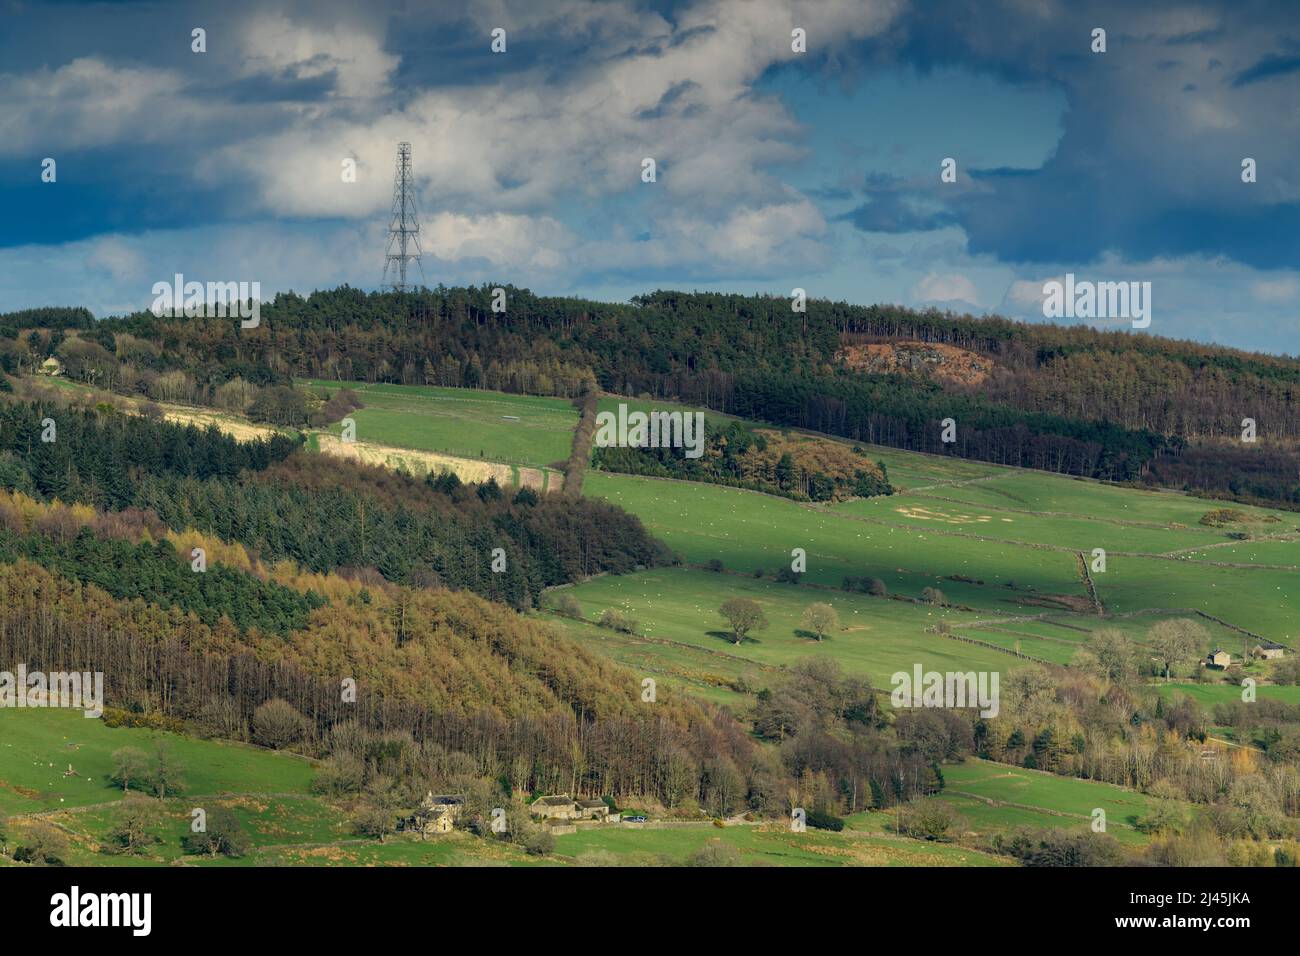 Paisaje rural soleado (laderas boscosas, pastos y pastos, mástil de retransmisión de tv y radio, cielo nublado) - Washburn Valley, Yorkshire, Inglaterra, Reino Unido. Foto de stock